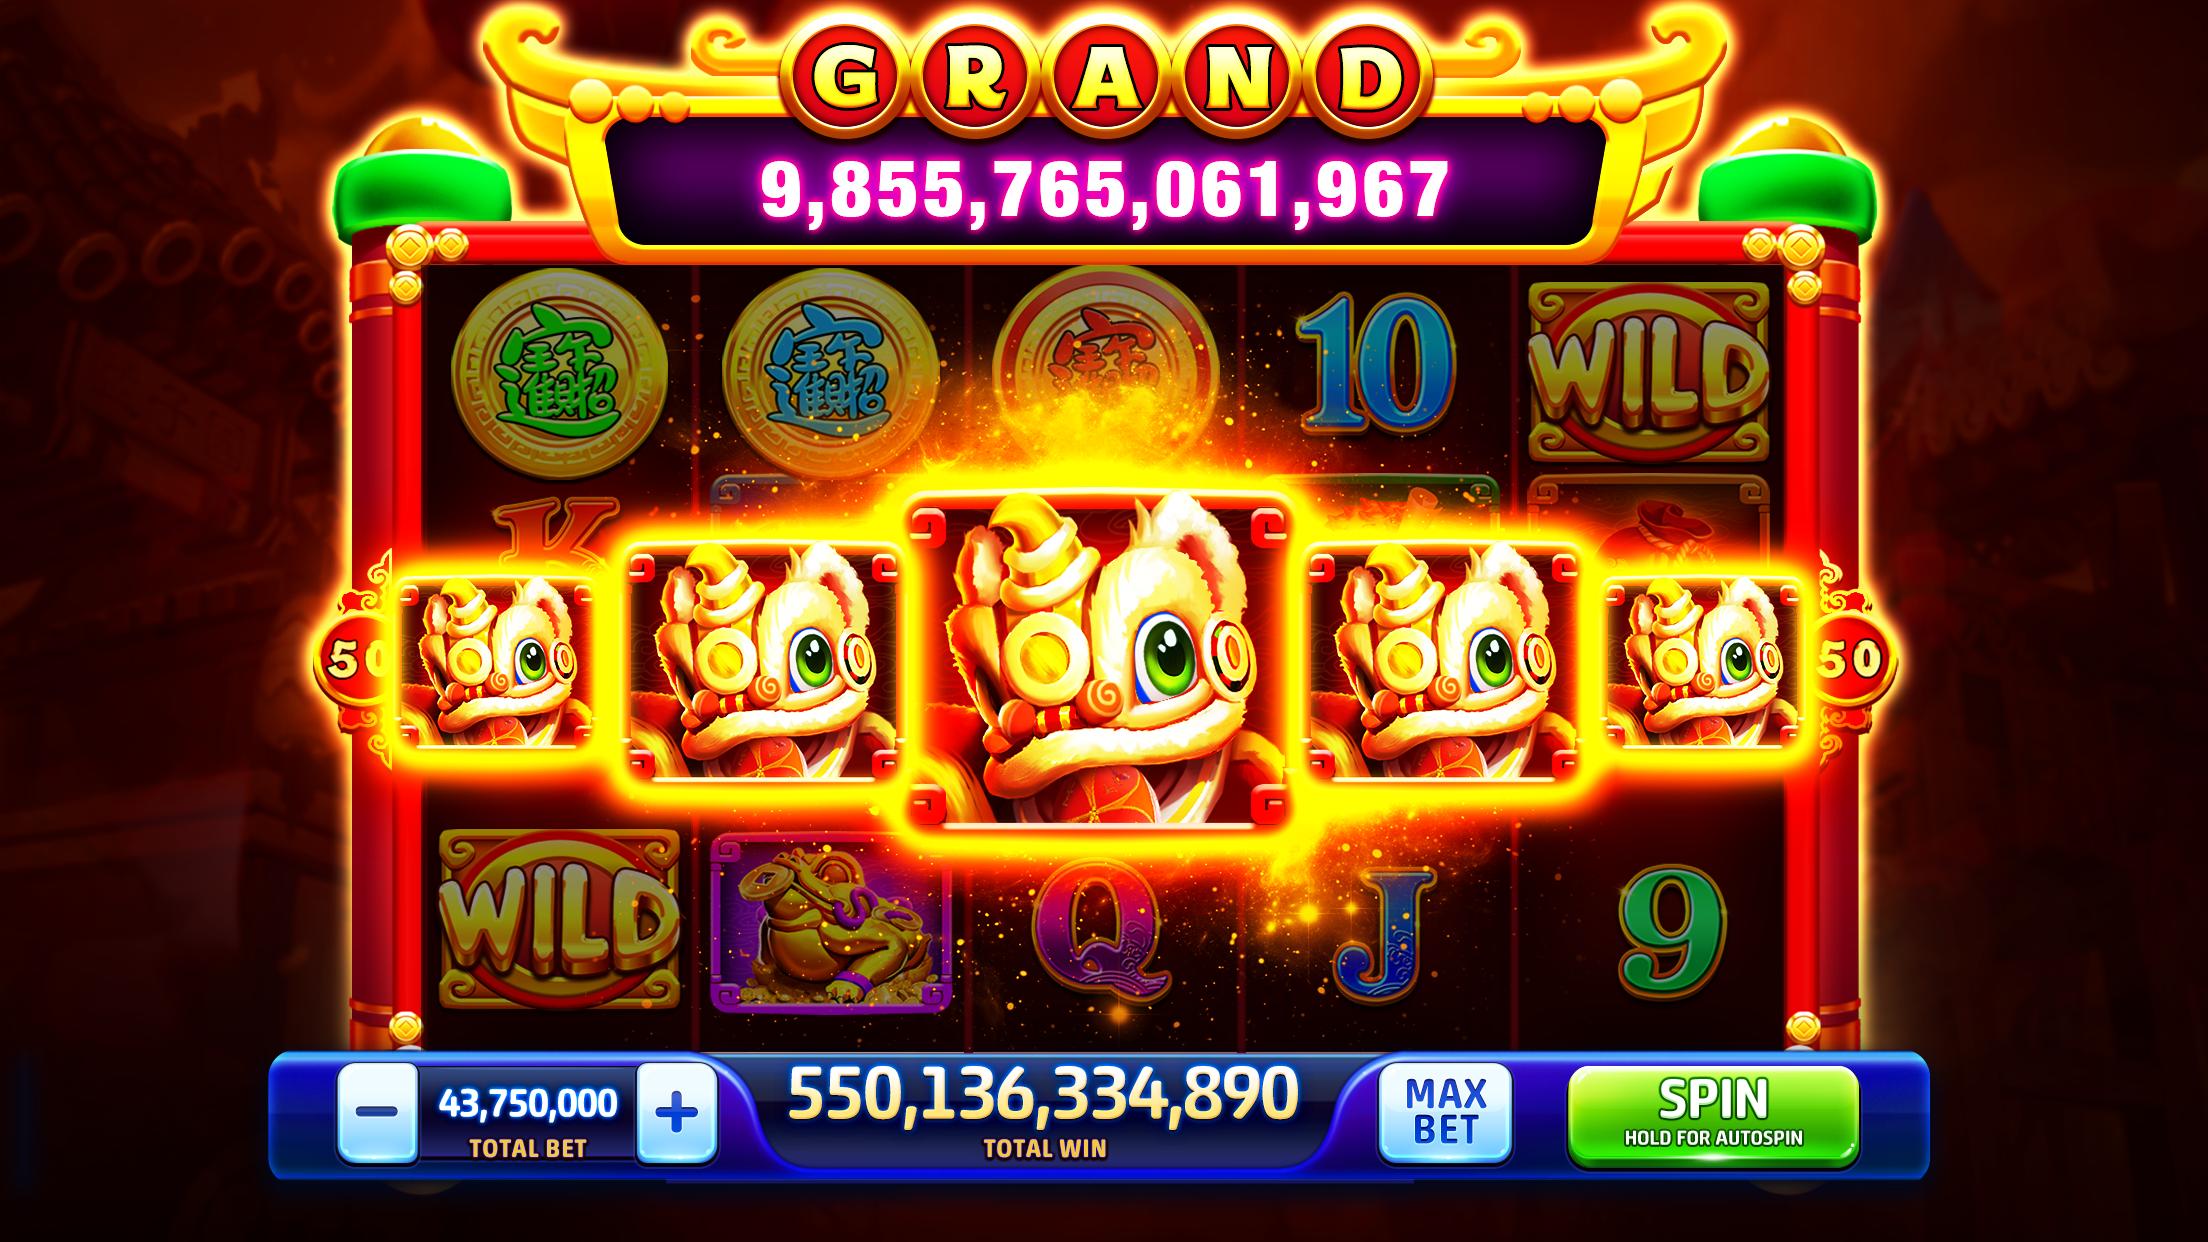 Slots casino jackpot mania free coins